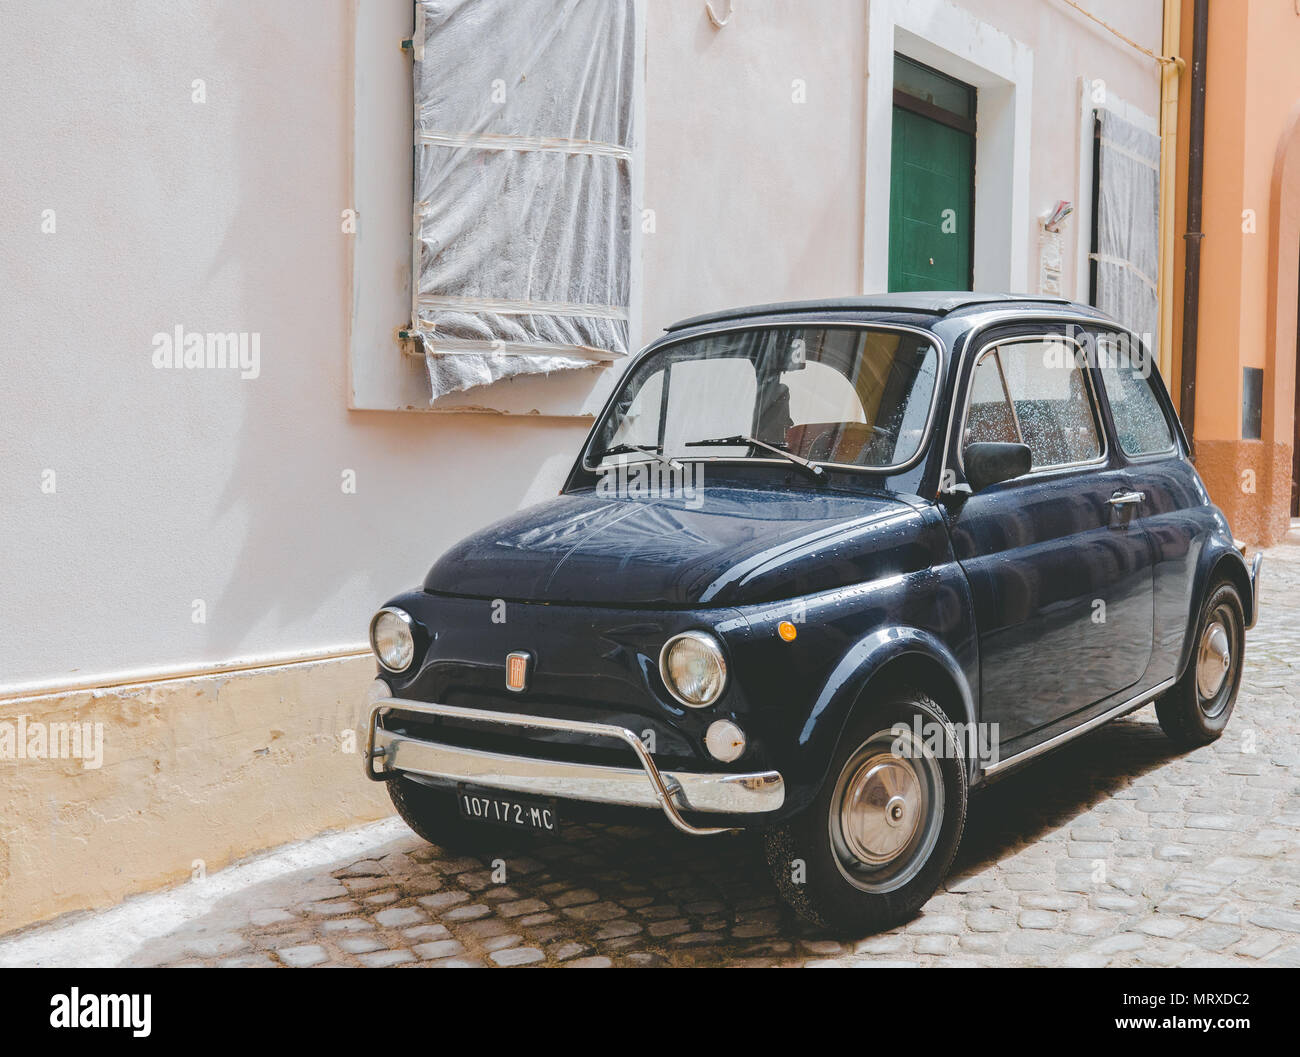 Un vieux italien bleu 500 voiture est garée sur une rue typique italien Banque D'Images